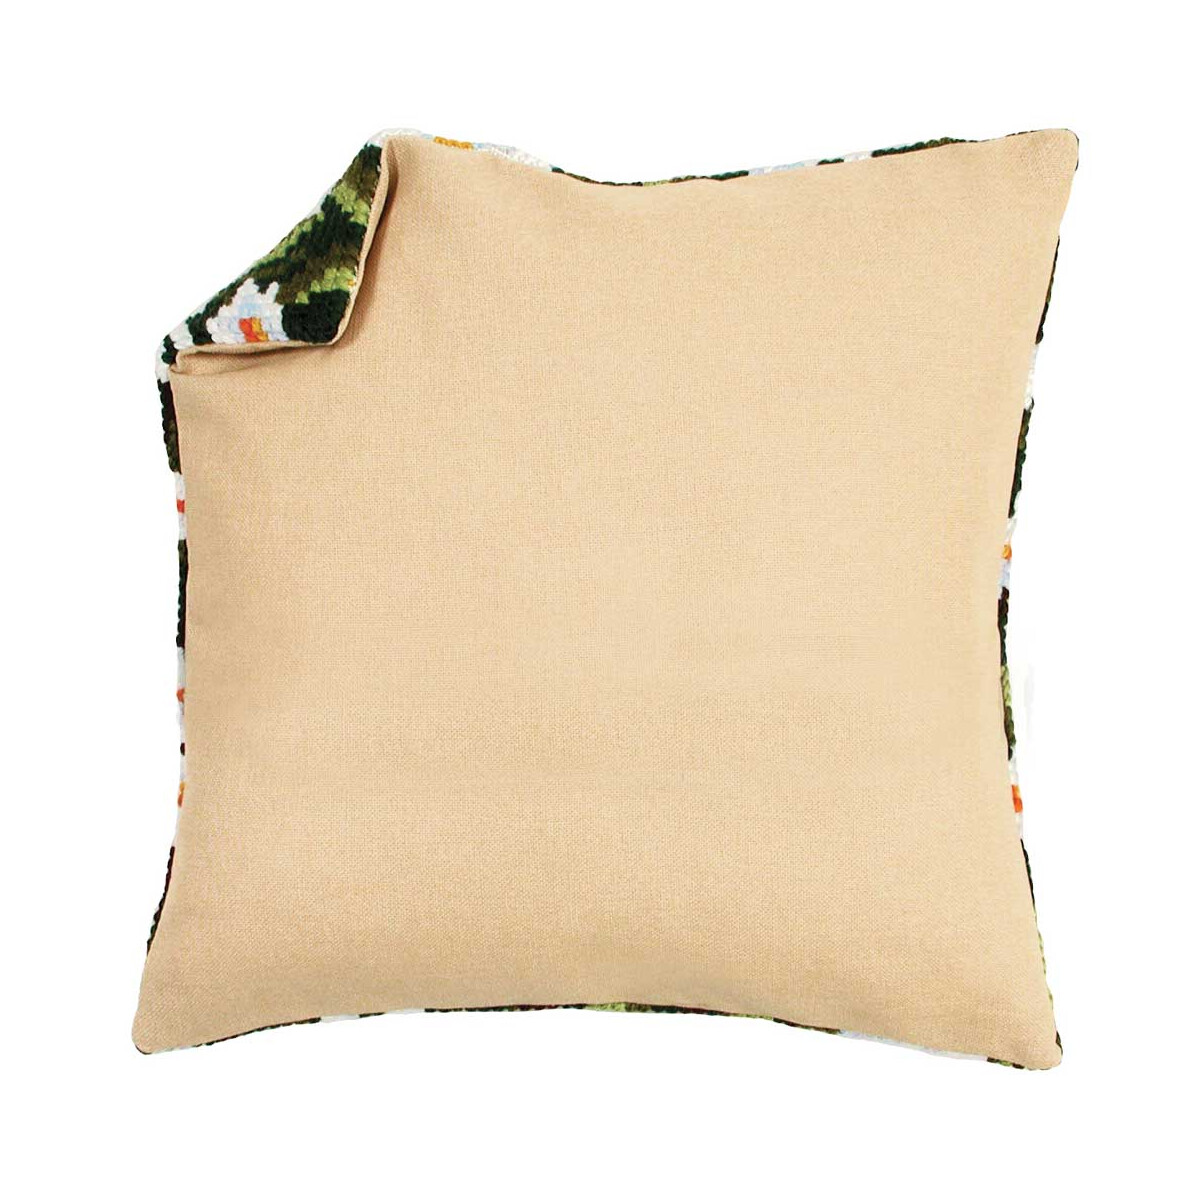 Vervaco Cushion Back without Zipper - Ecru, 45 x 45 cm, DIY